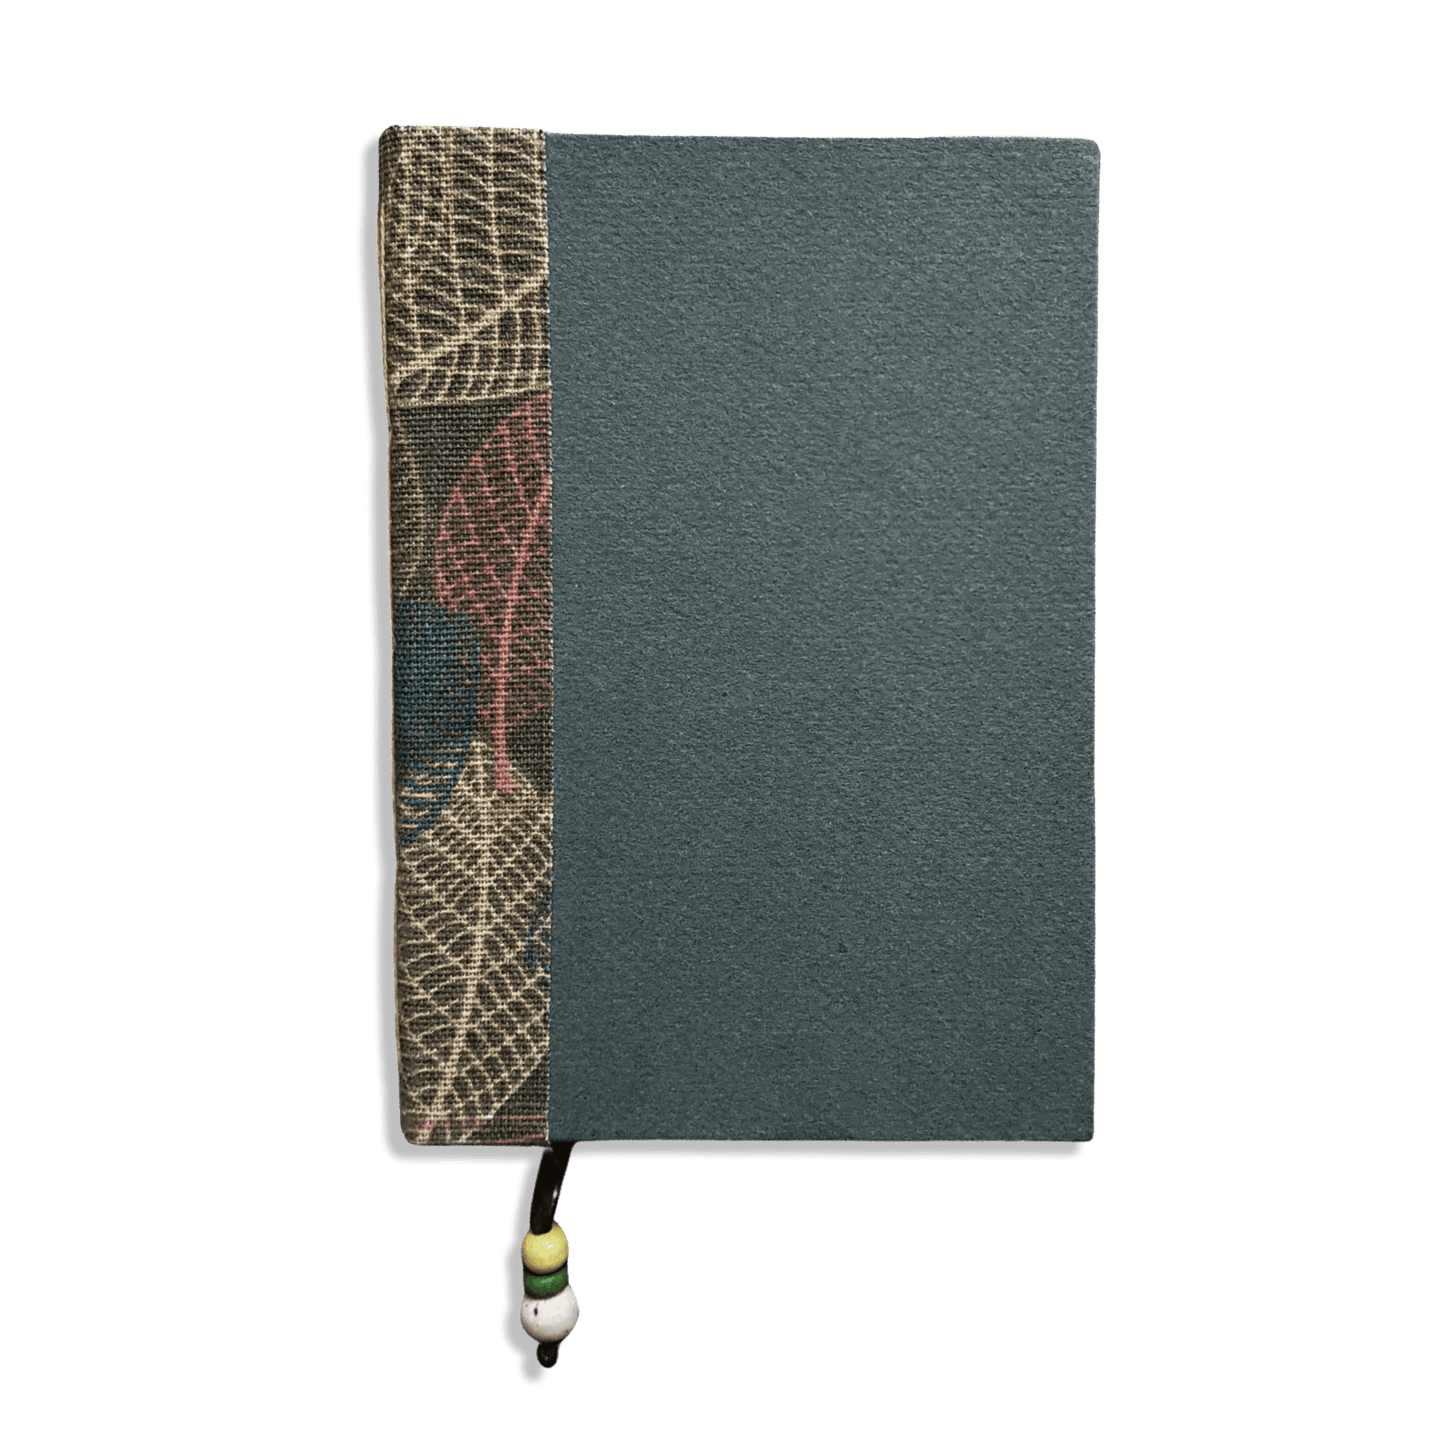 Fabric Spine Notebook Dark Green